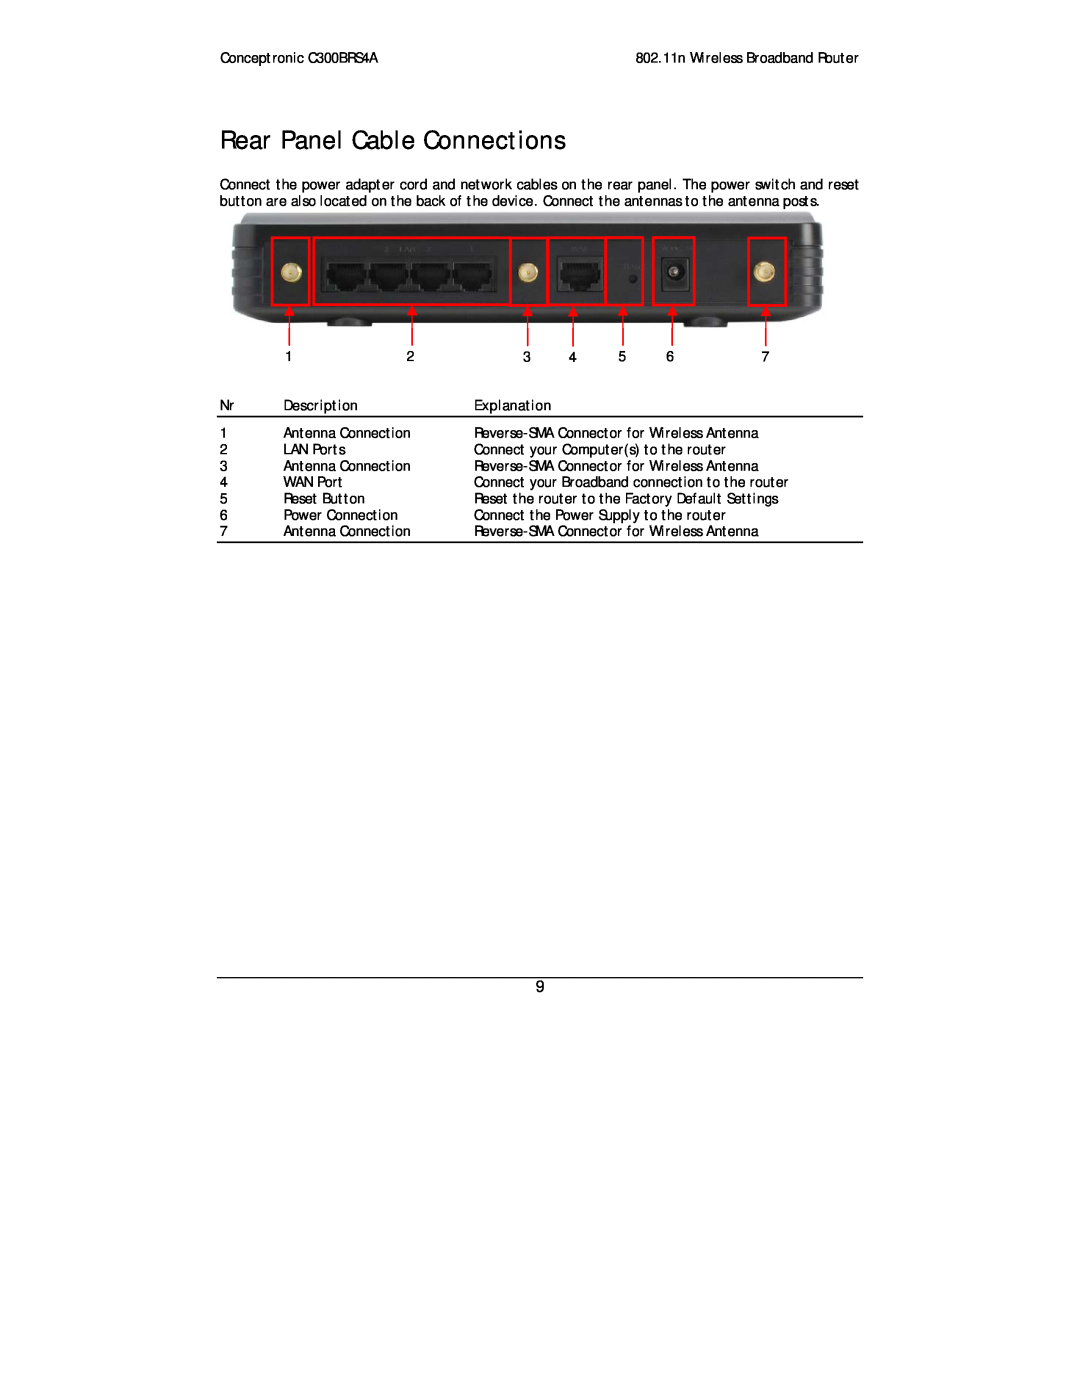 Conceptronic C300BRS4A user manual Rear Panel Cable Connections, Description, Explanation 